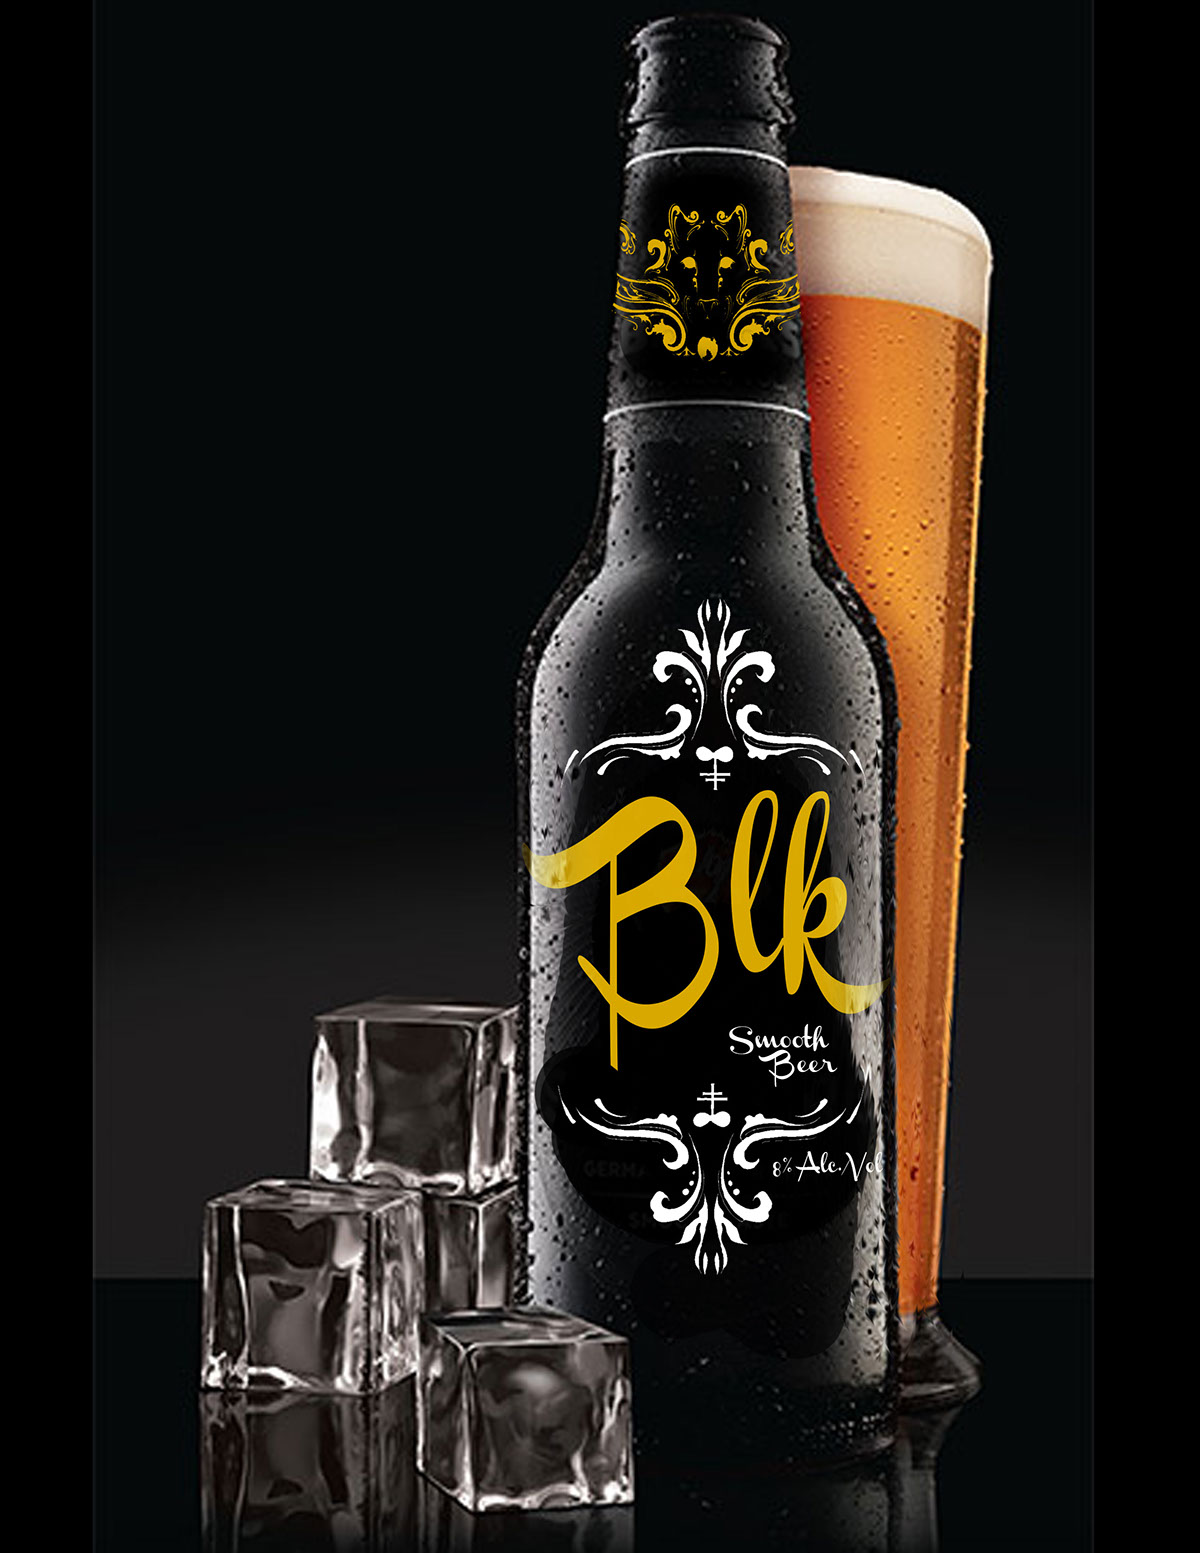 beer pakaging brand design black panter